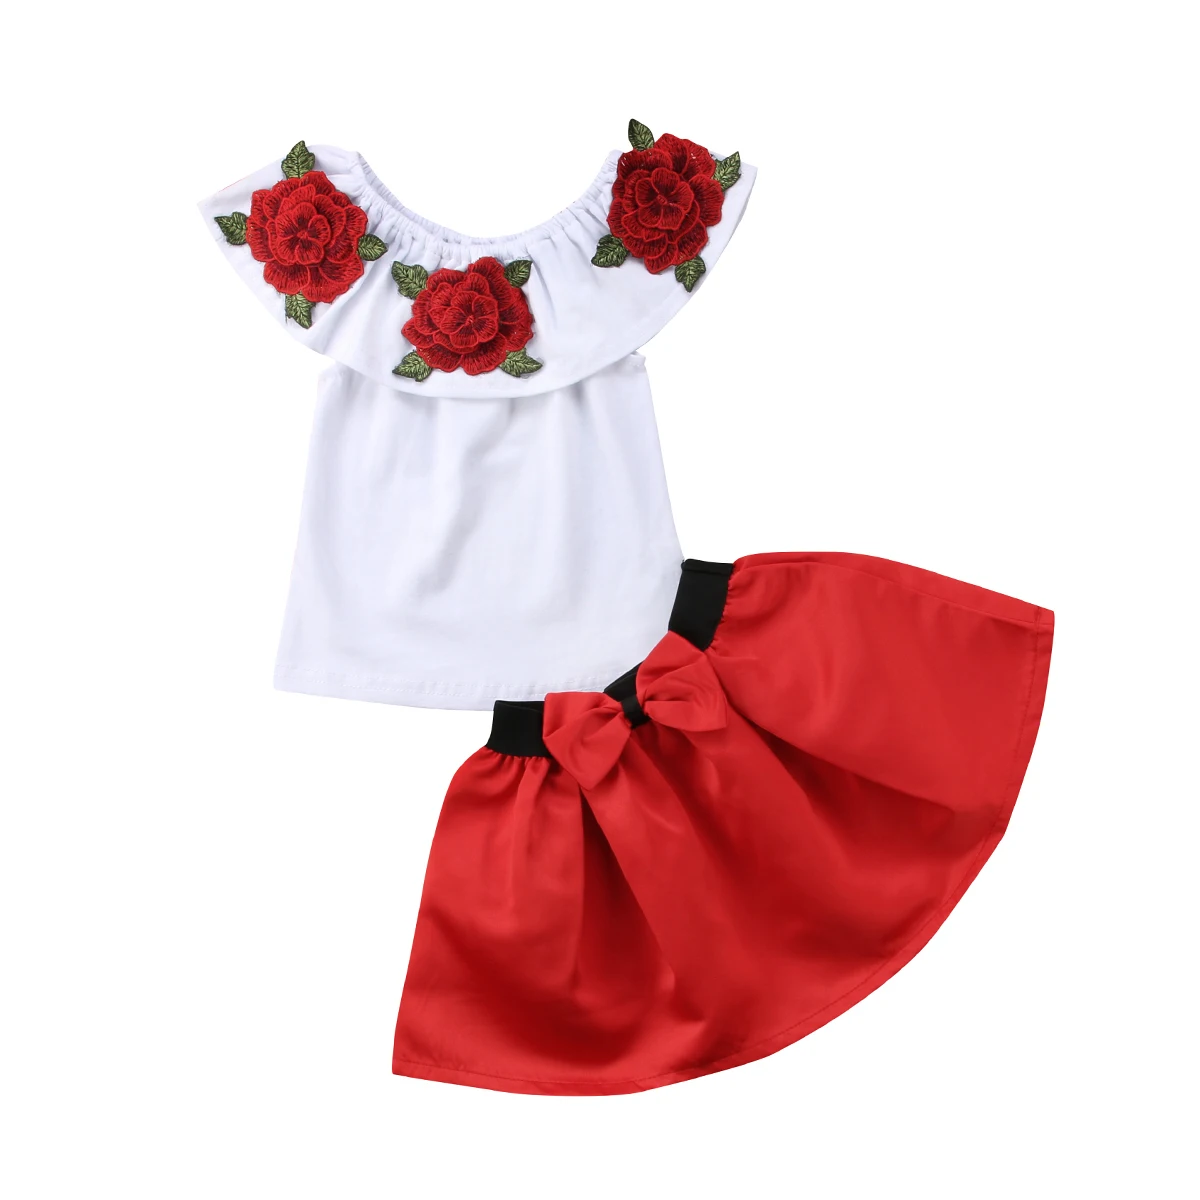 Цветок дети для маленьких девочек с открытыми плечами цветочный платье с топом комплект одежды